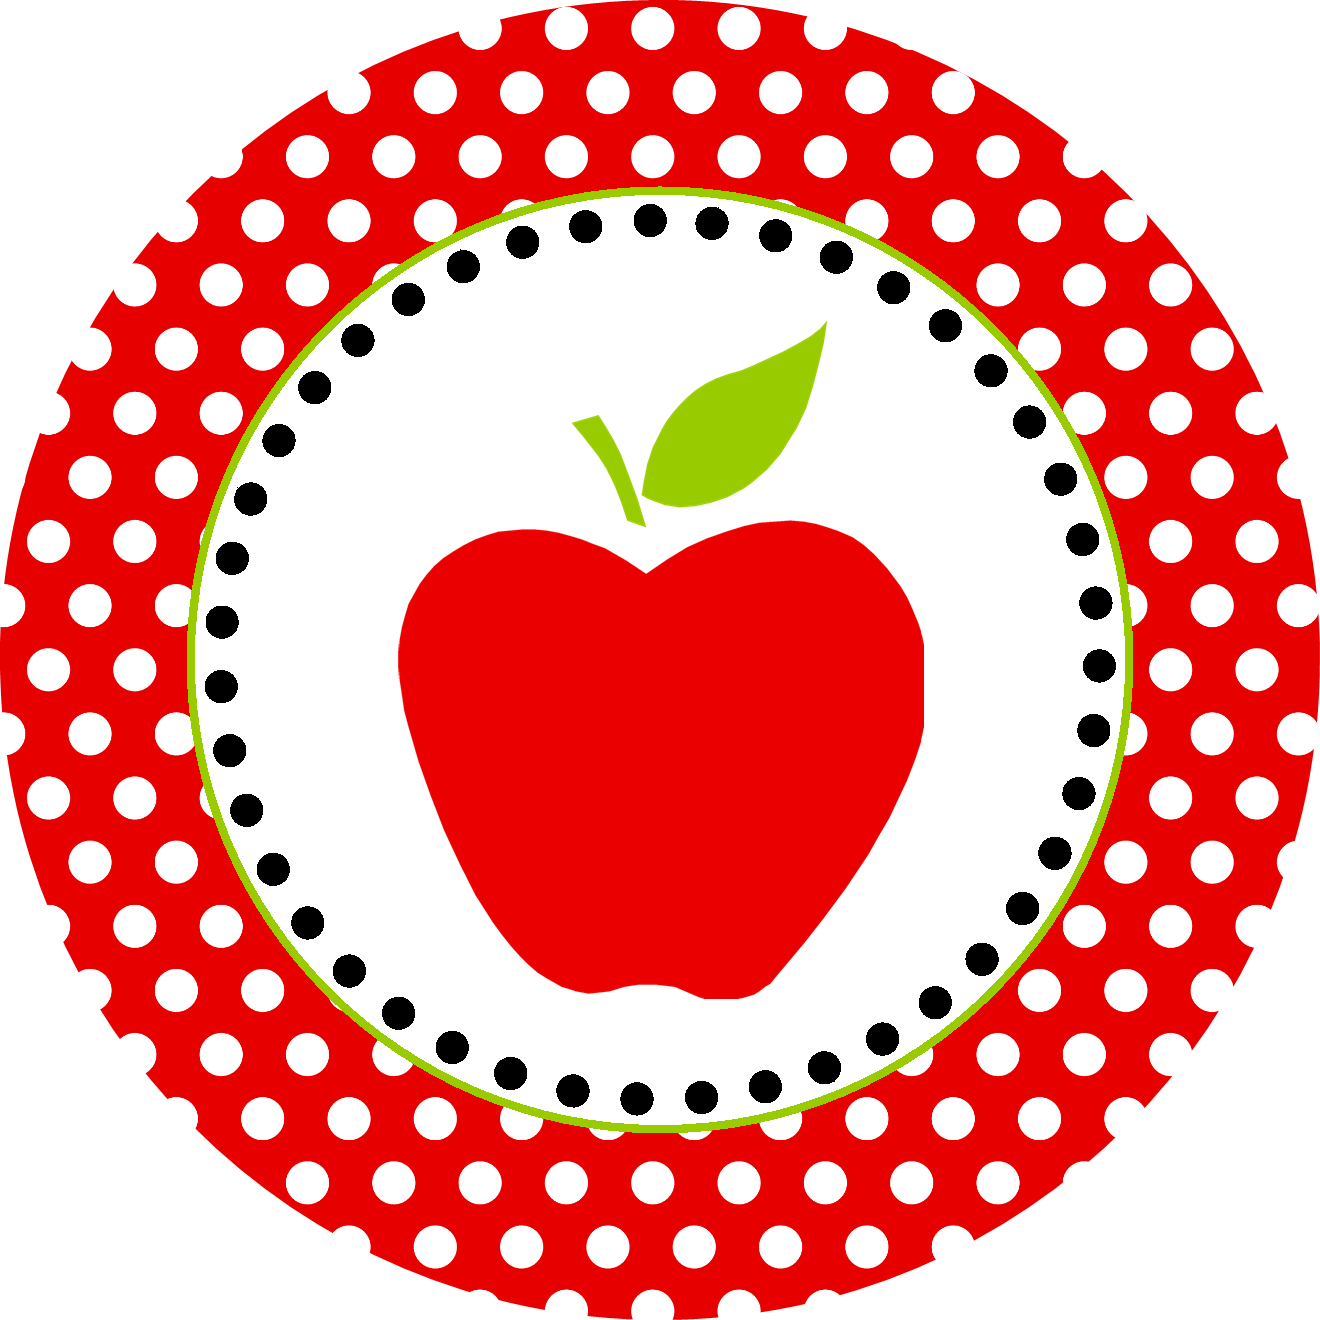 apple clipart for teachers - photo #28